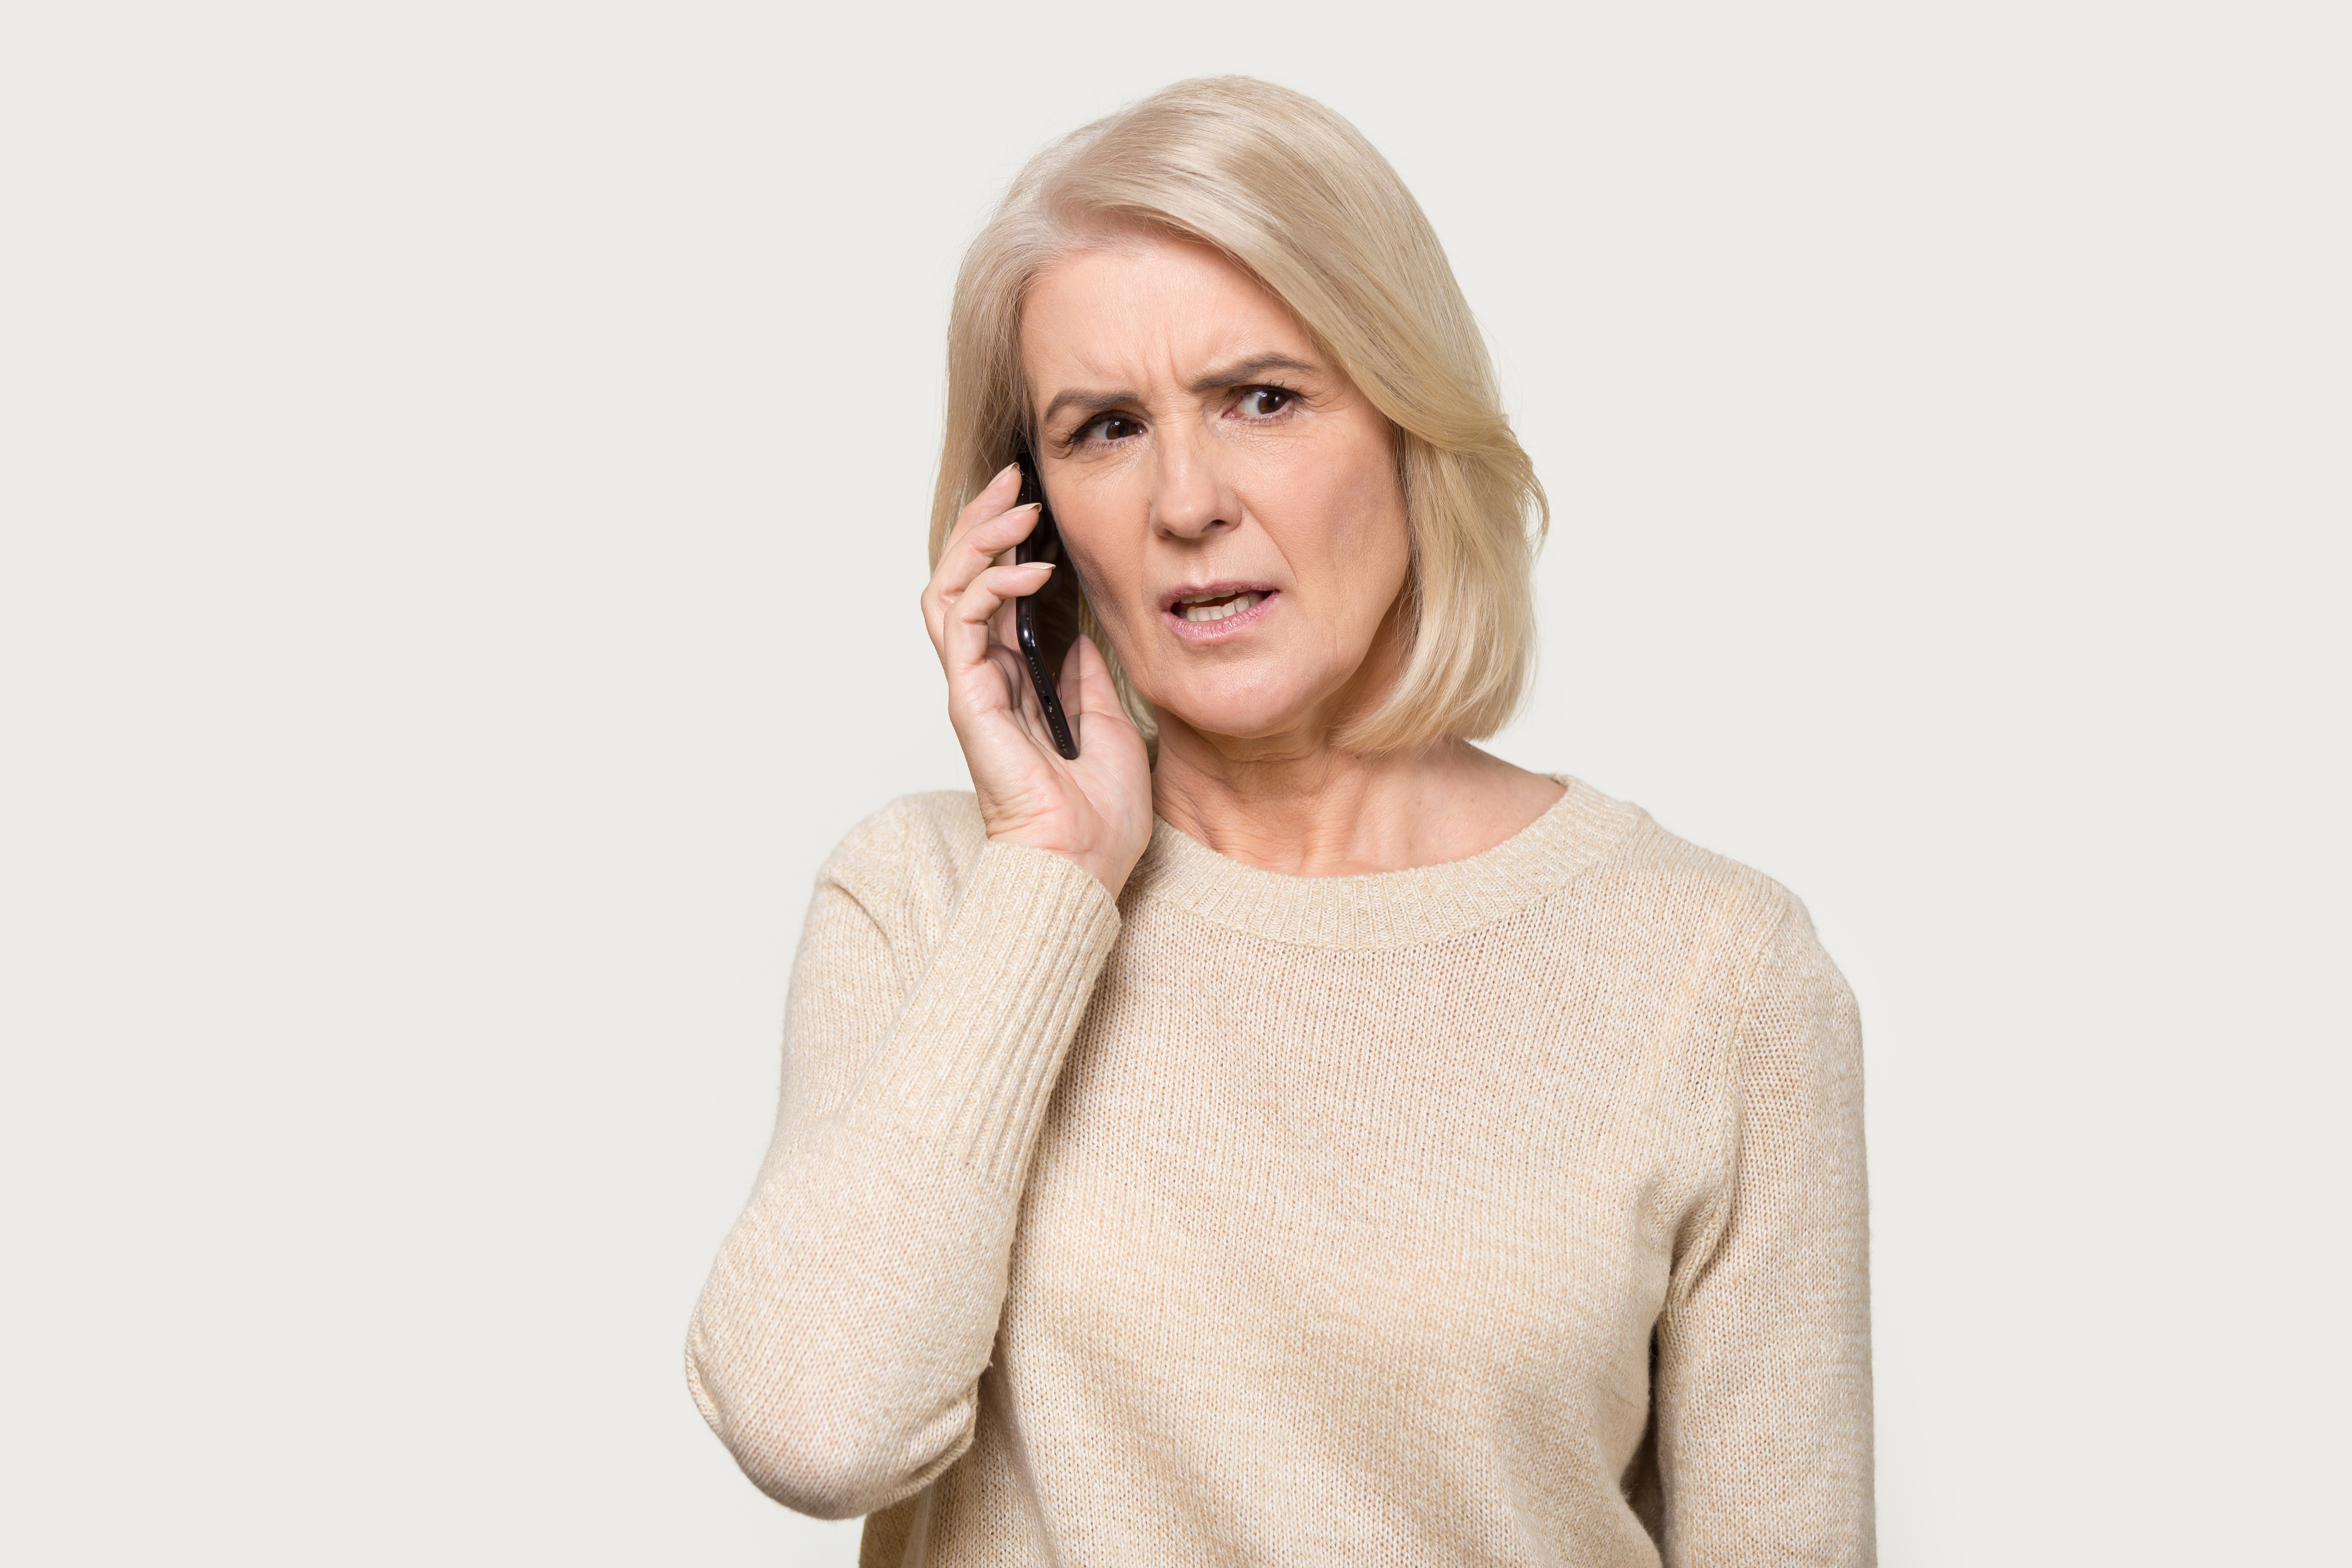 Frau telefoniert mit besorgter Miene | Quelle: Shutterstock